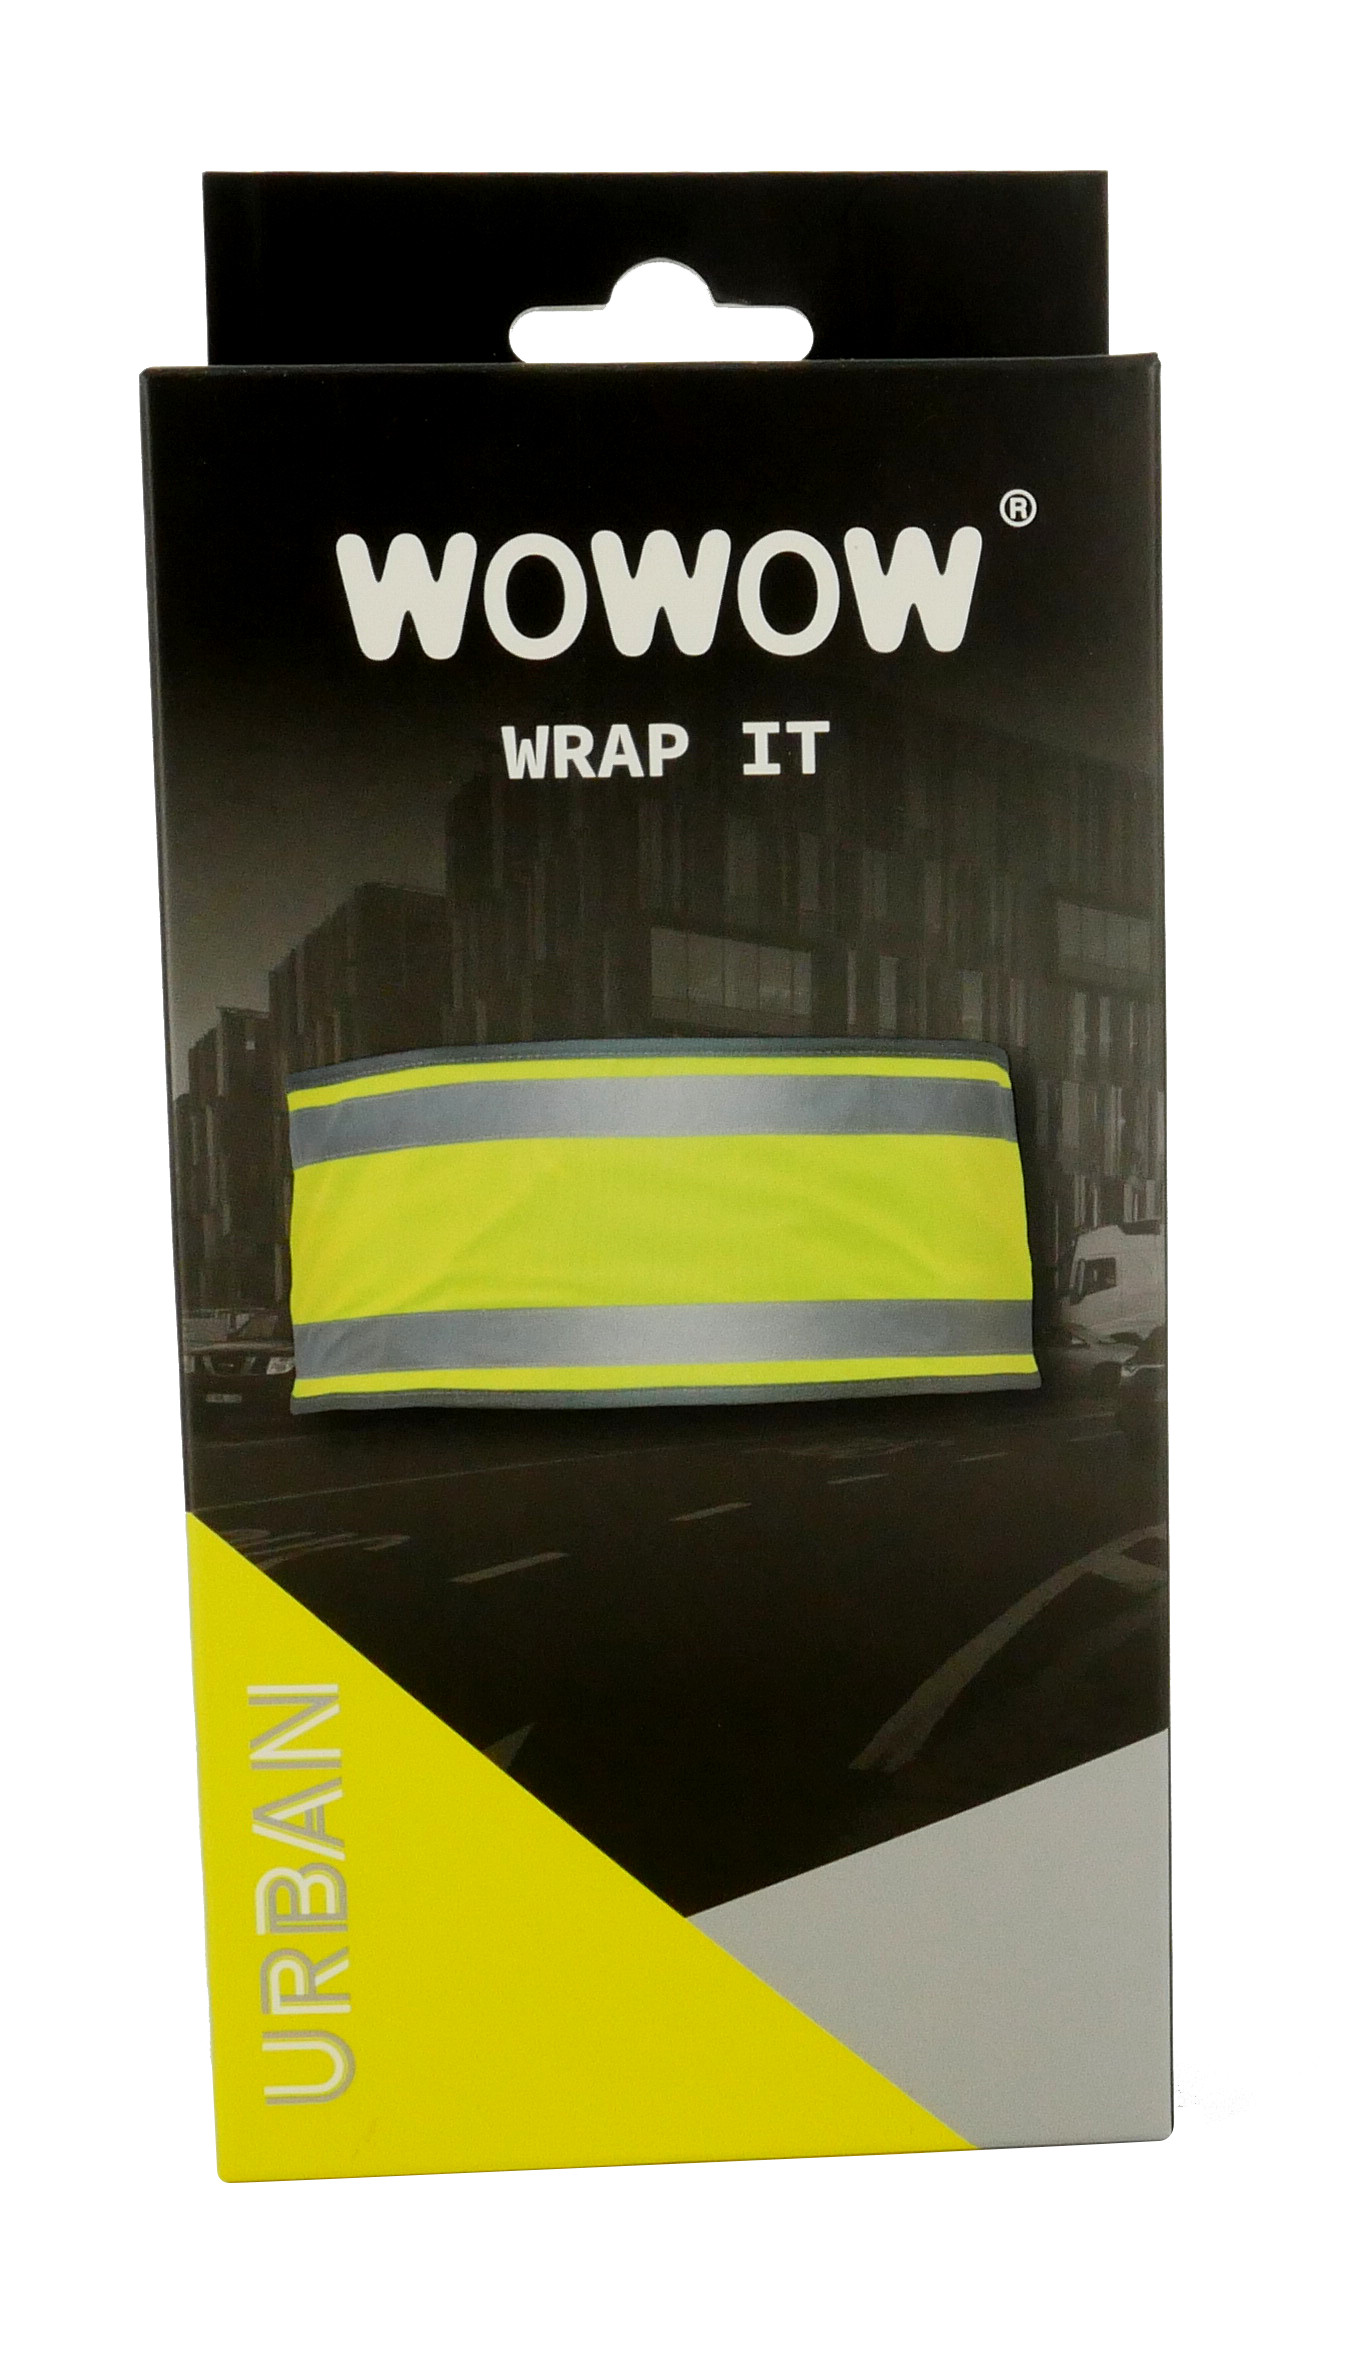 Wowow Wrap it yellow reflective band